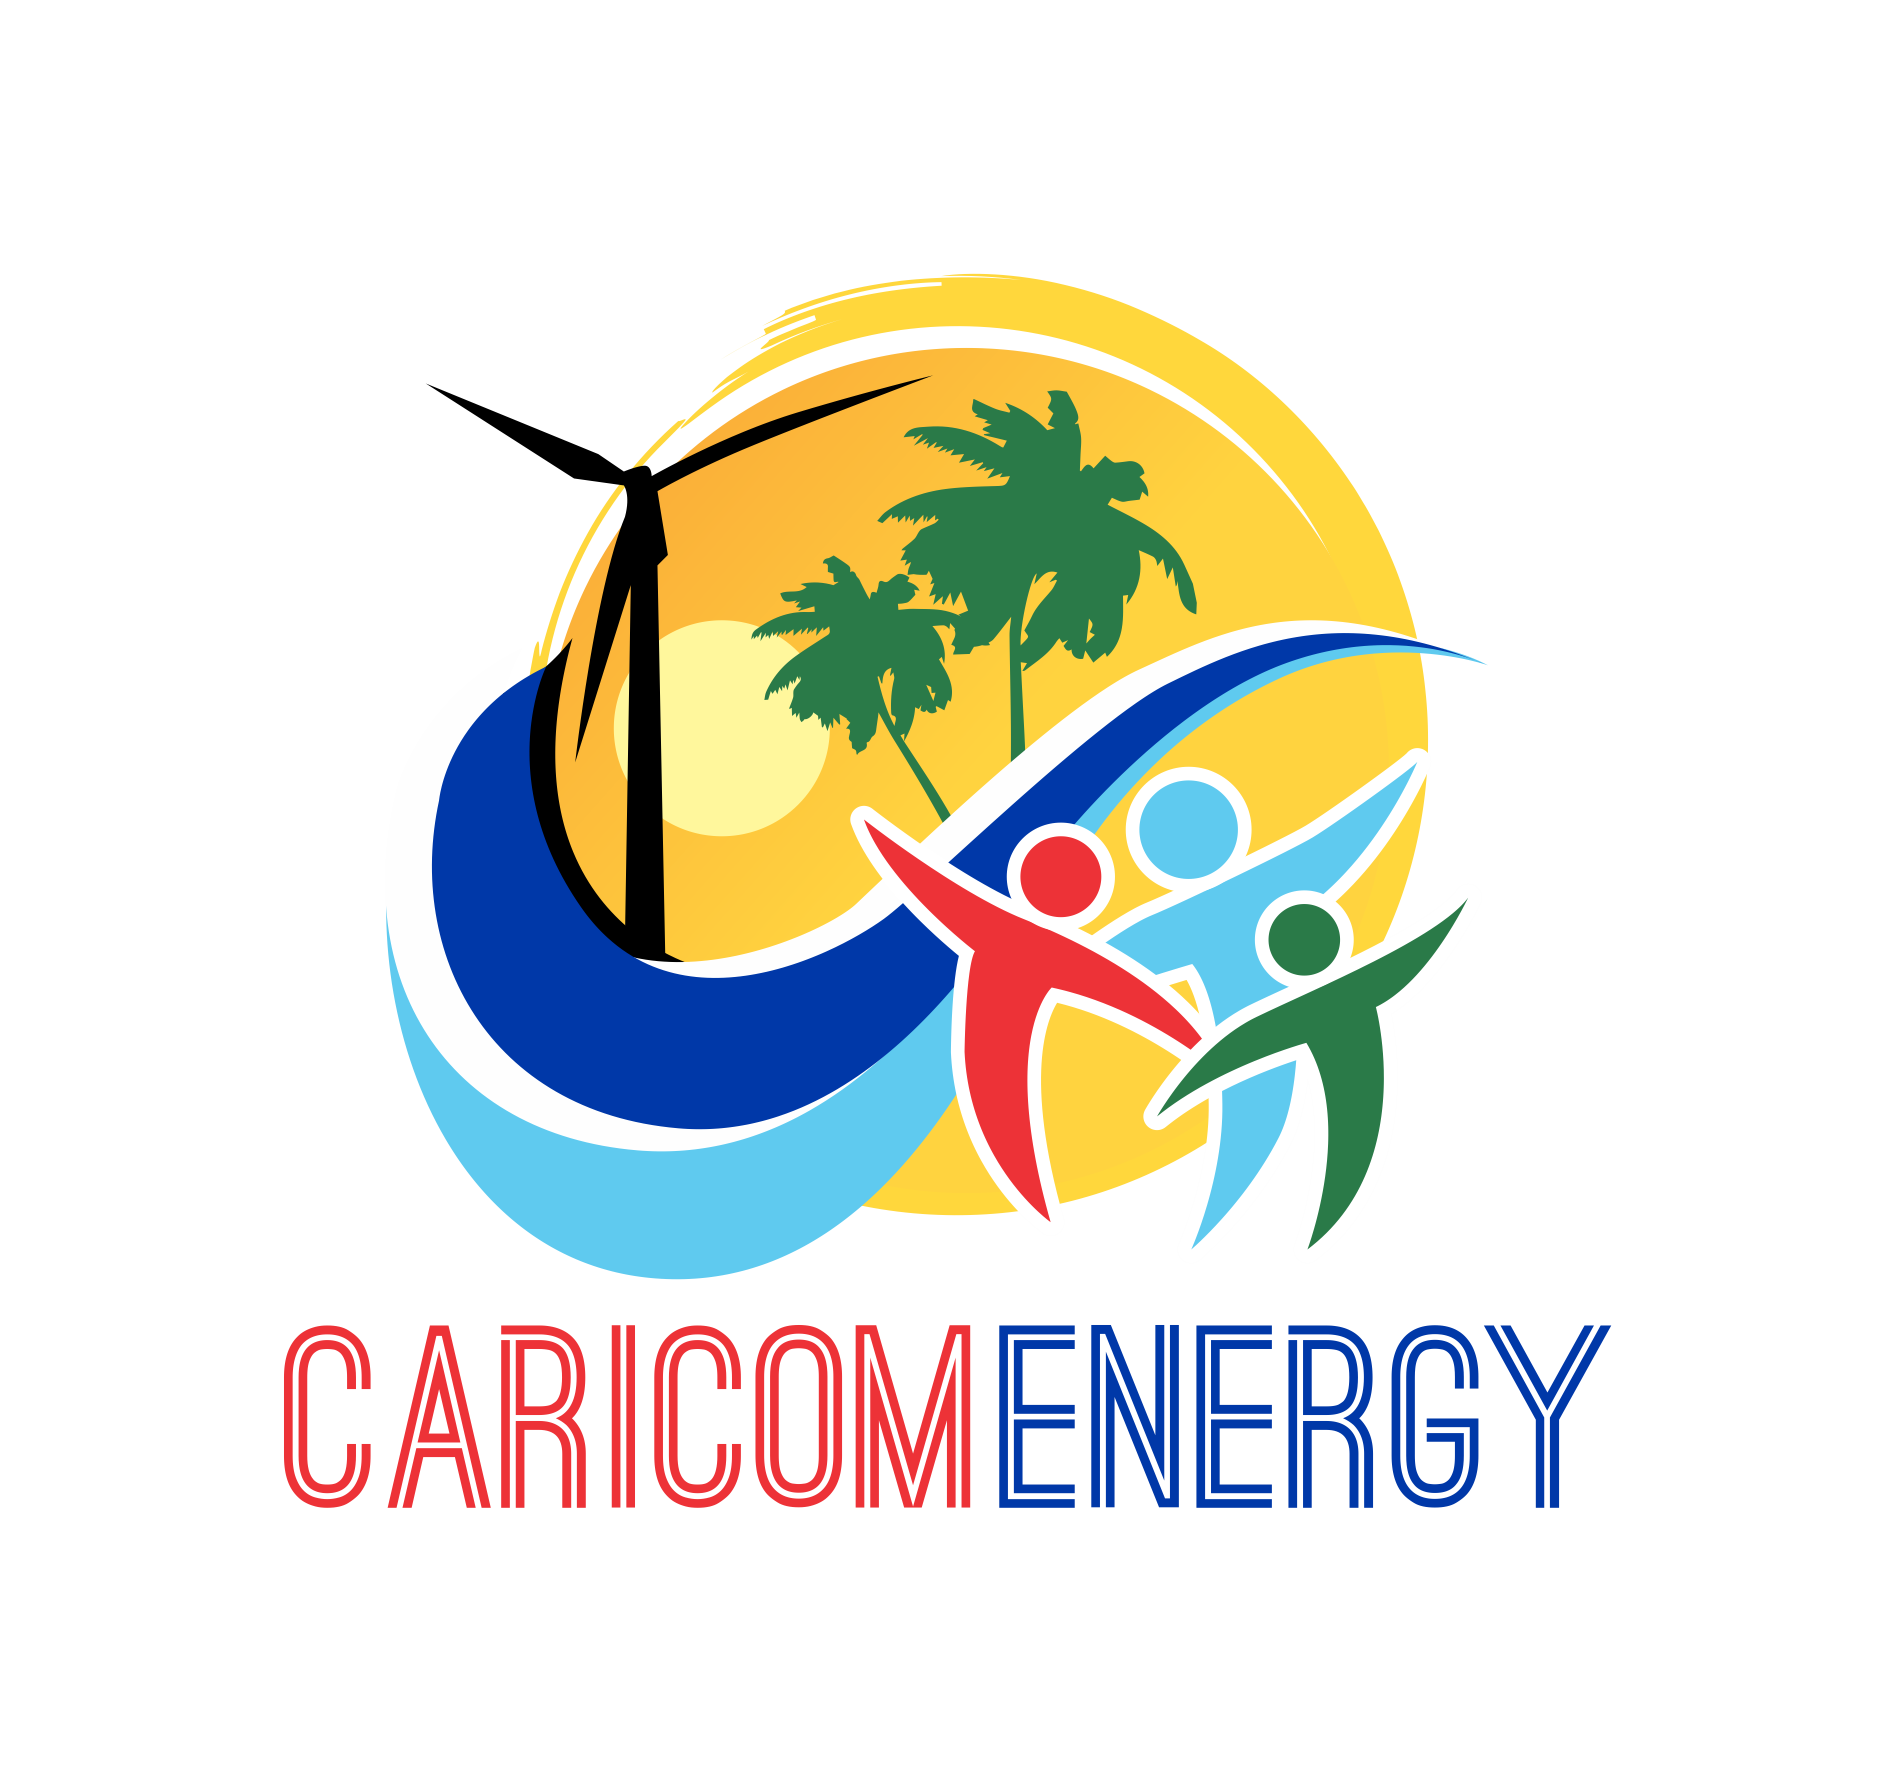 caricom-energy-logo-1.png